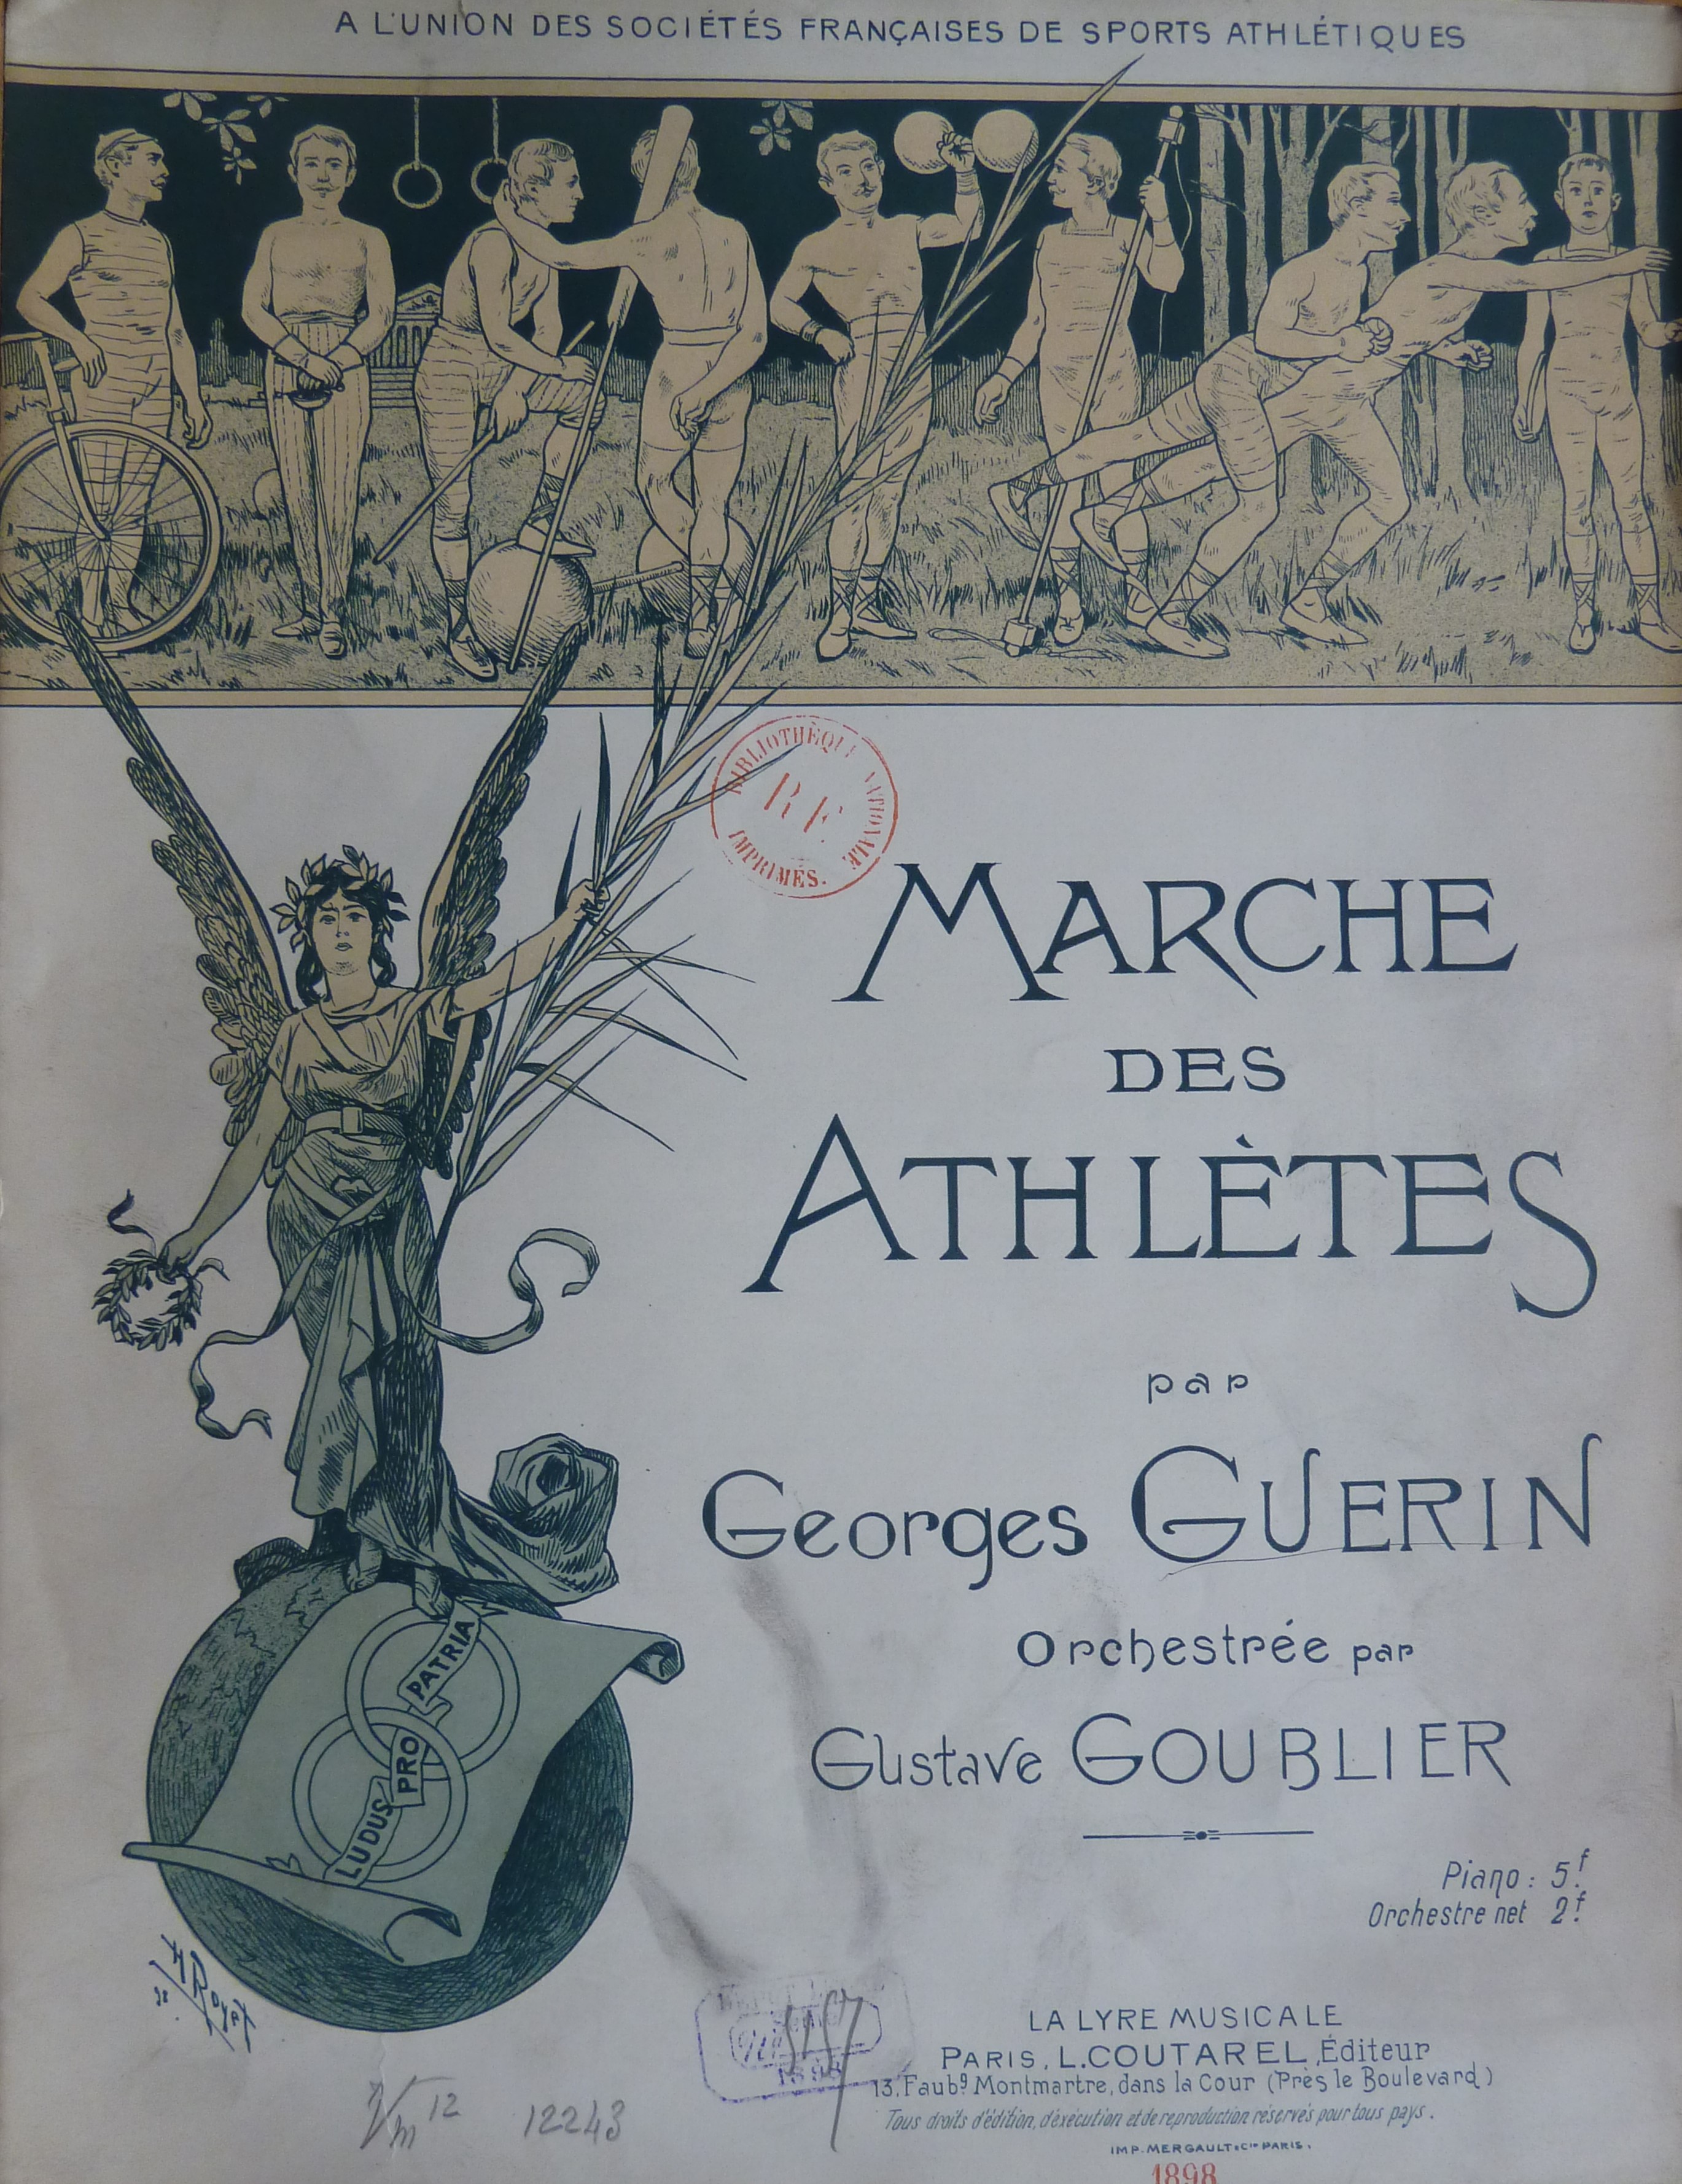 Figure 1 : H. Royet, couverture de la Marche des athlètes de Georges Guerin (Paris, L. Coutarel/La lyre musicale, 1898), avec la devise « ludus pro patria ». Source : BnF.